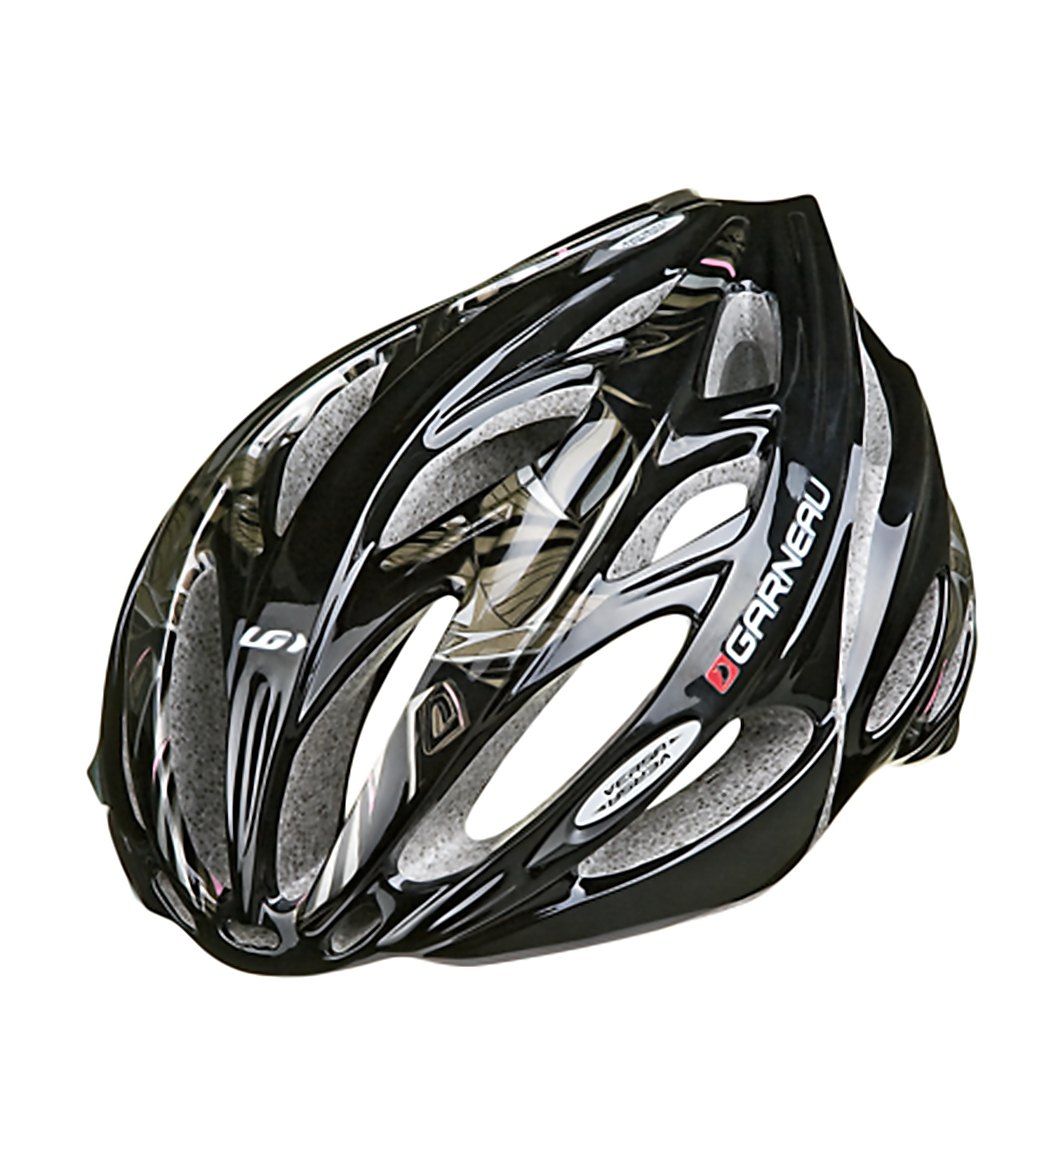 Louis Garneau VERSA Cycling Helmet at www.lvspeedy30.com - Free Shipping